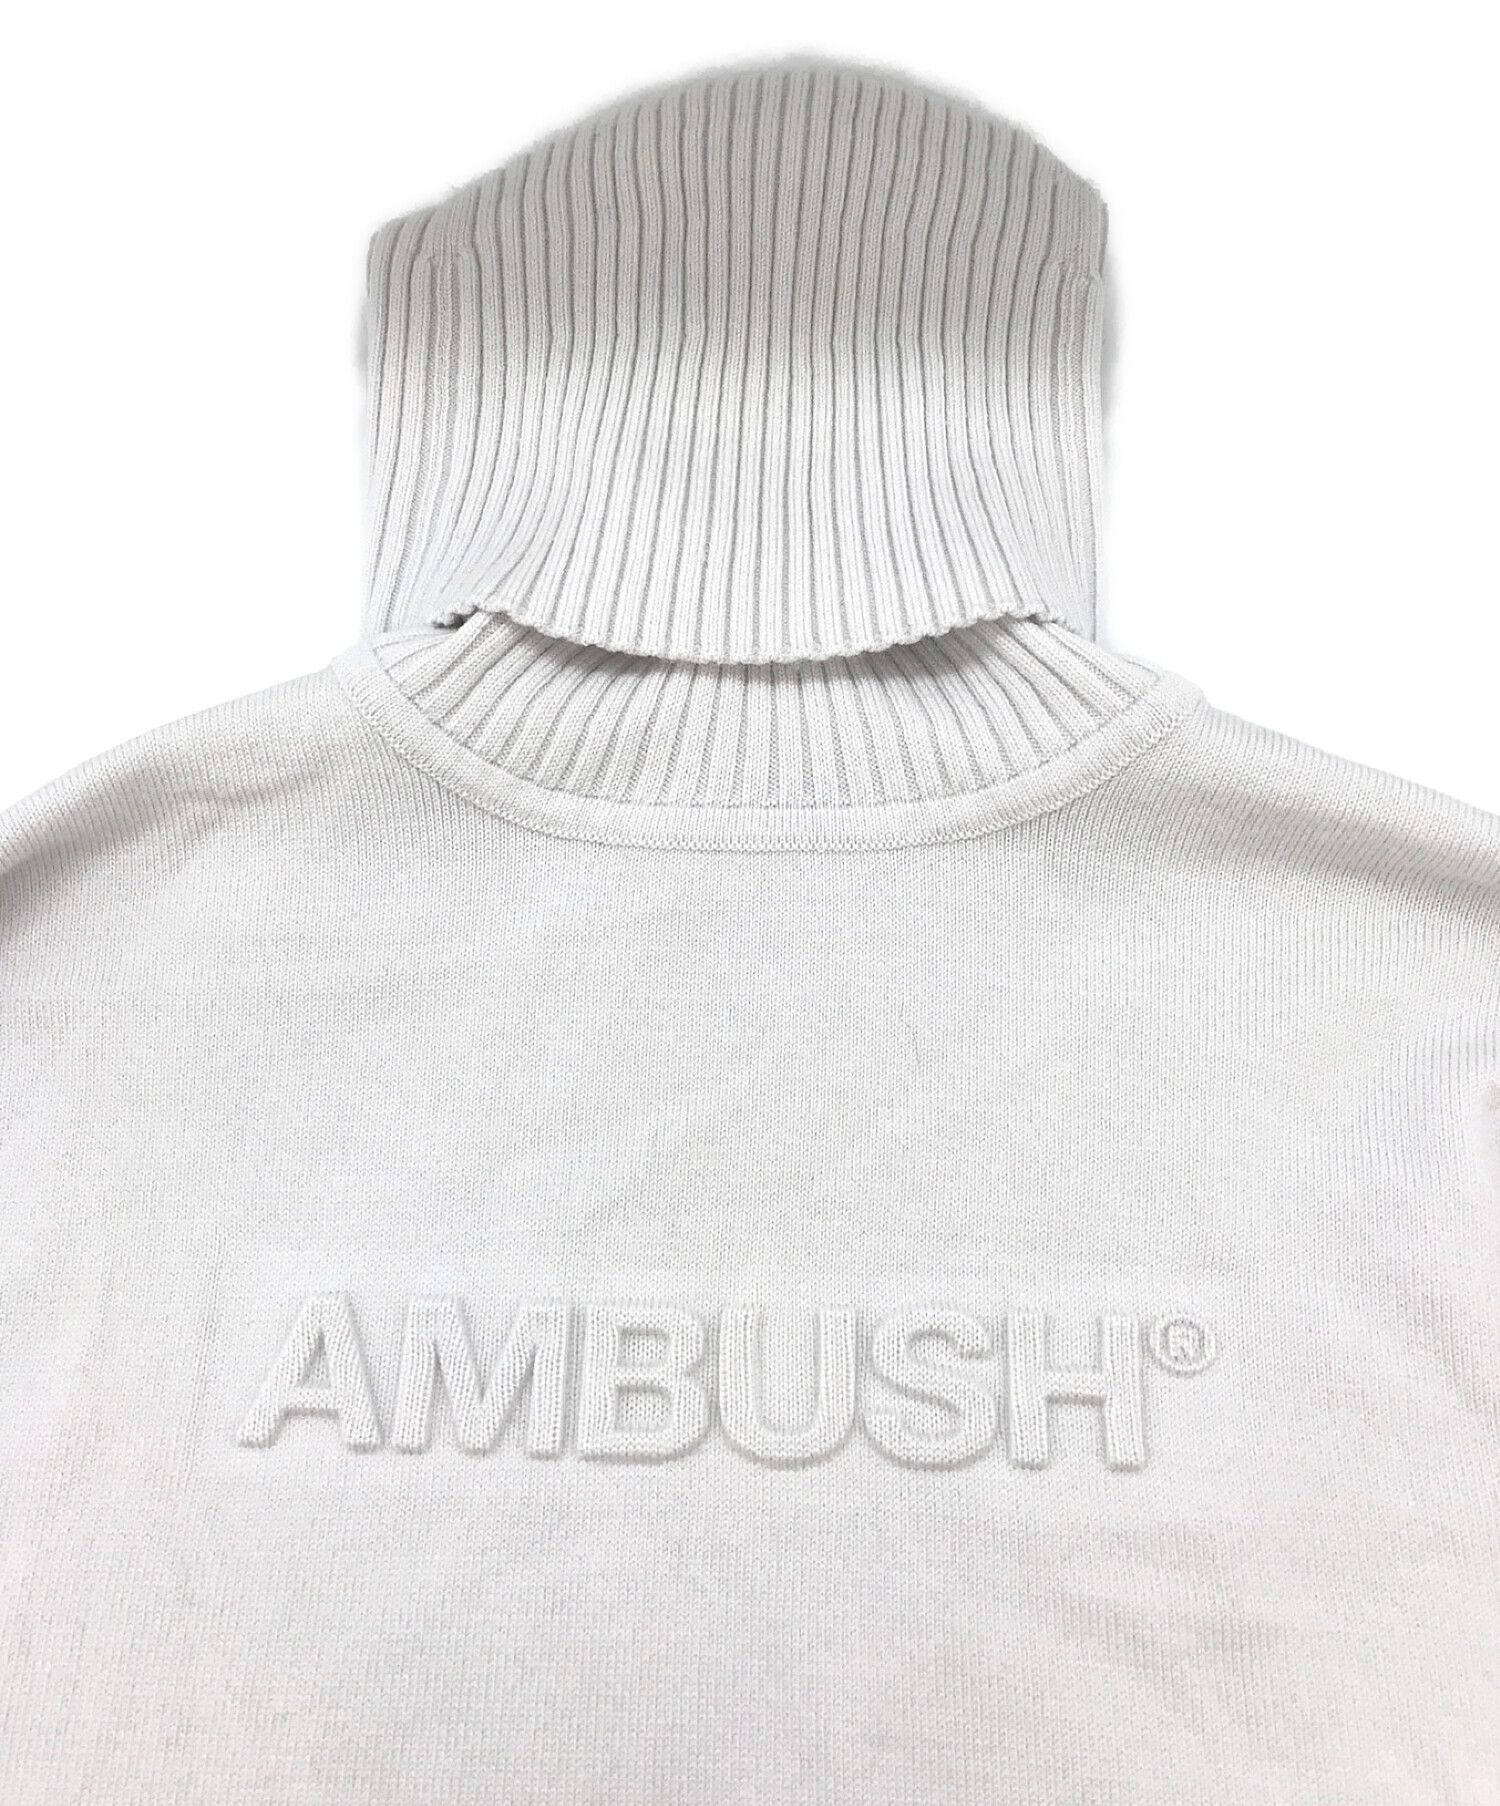 純正売品【2way】AMBUSH アンブッシュ タートルネック セーター ロゴ刺繍 黒 トップス